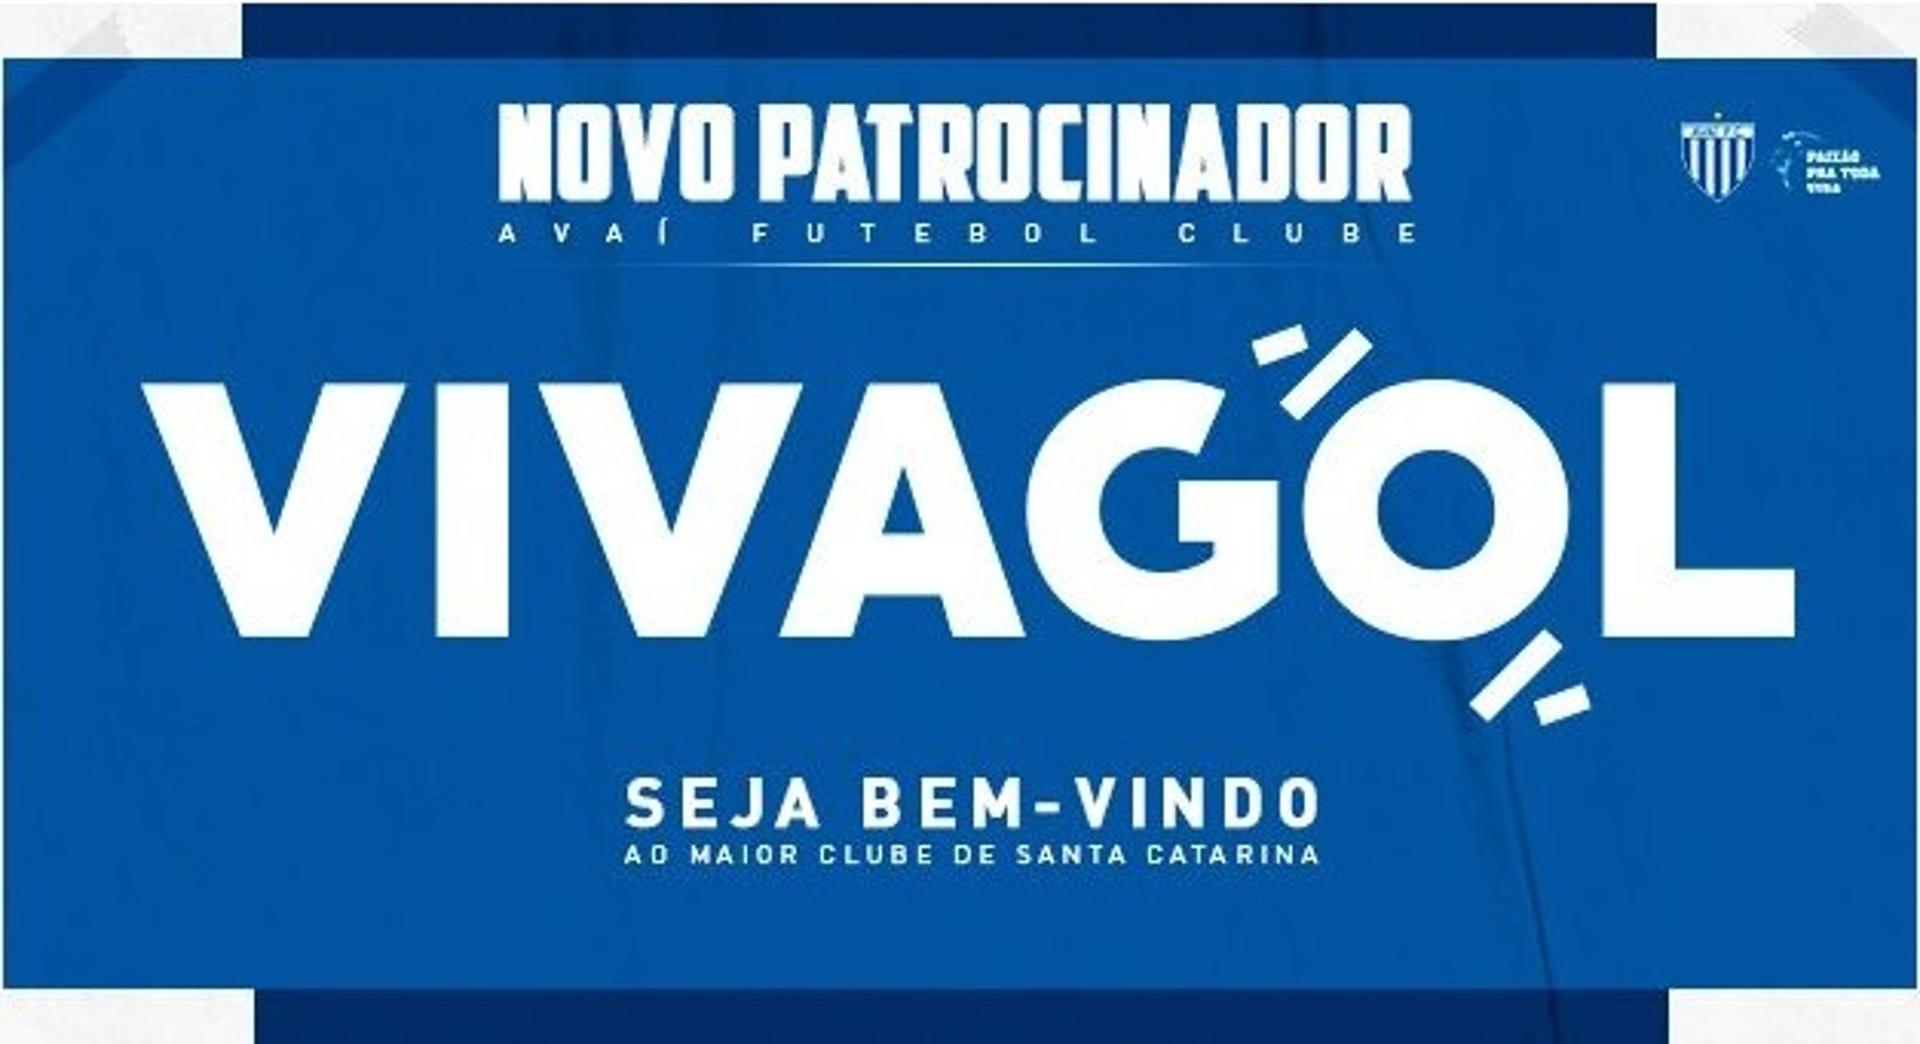 Vivagol - Avaí